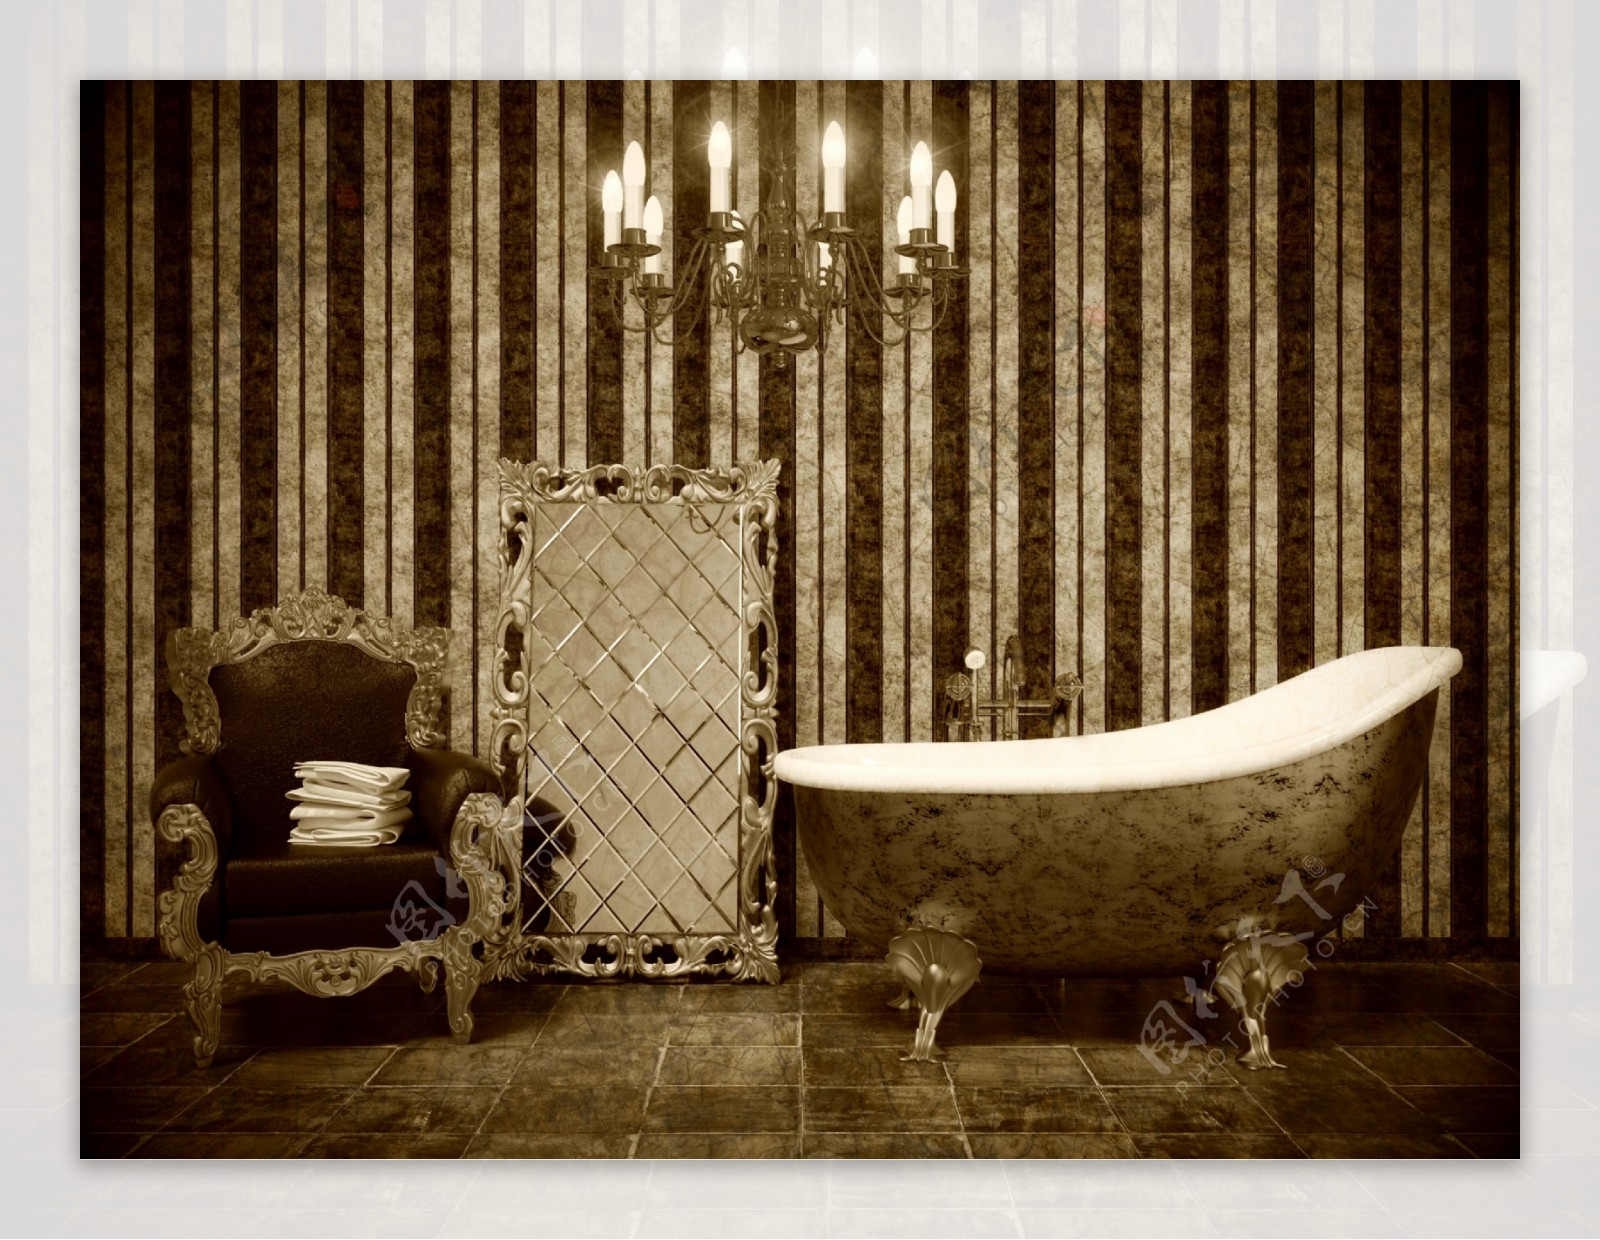 豪华沙发与浴缸图片